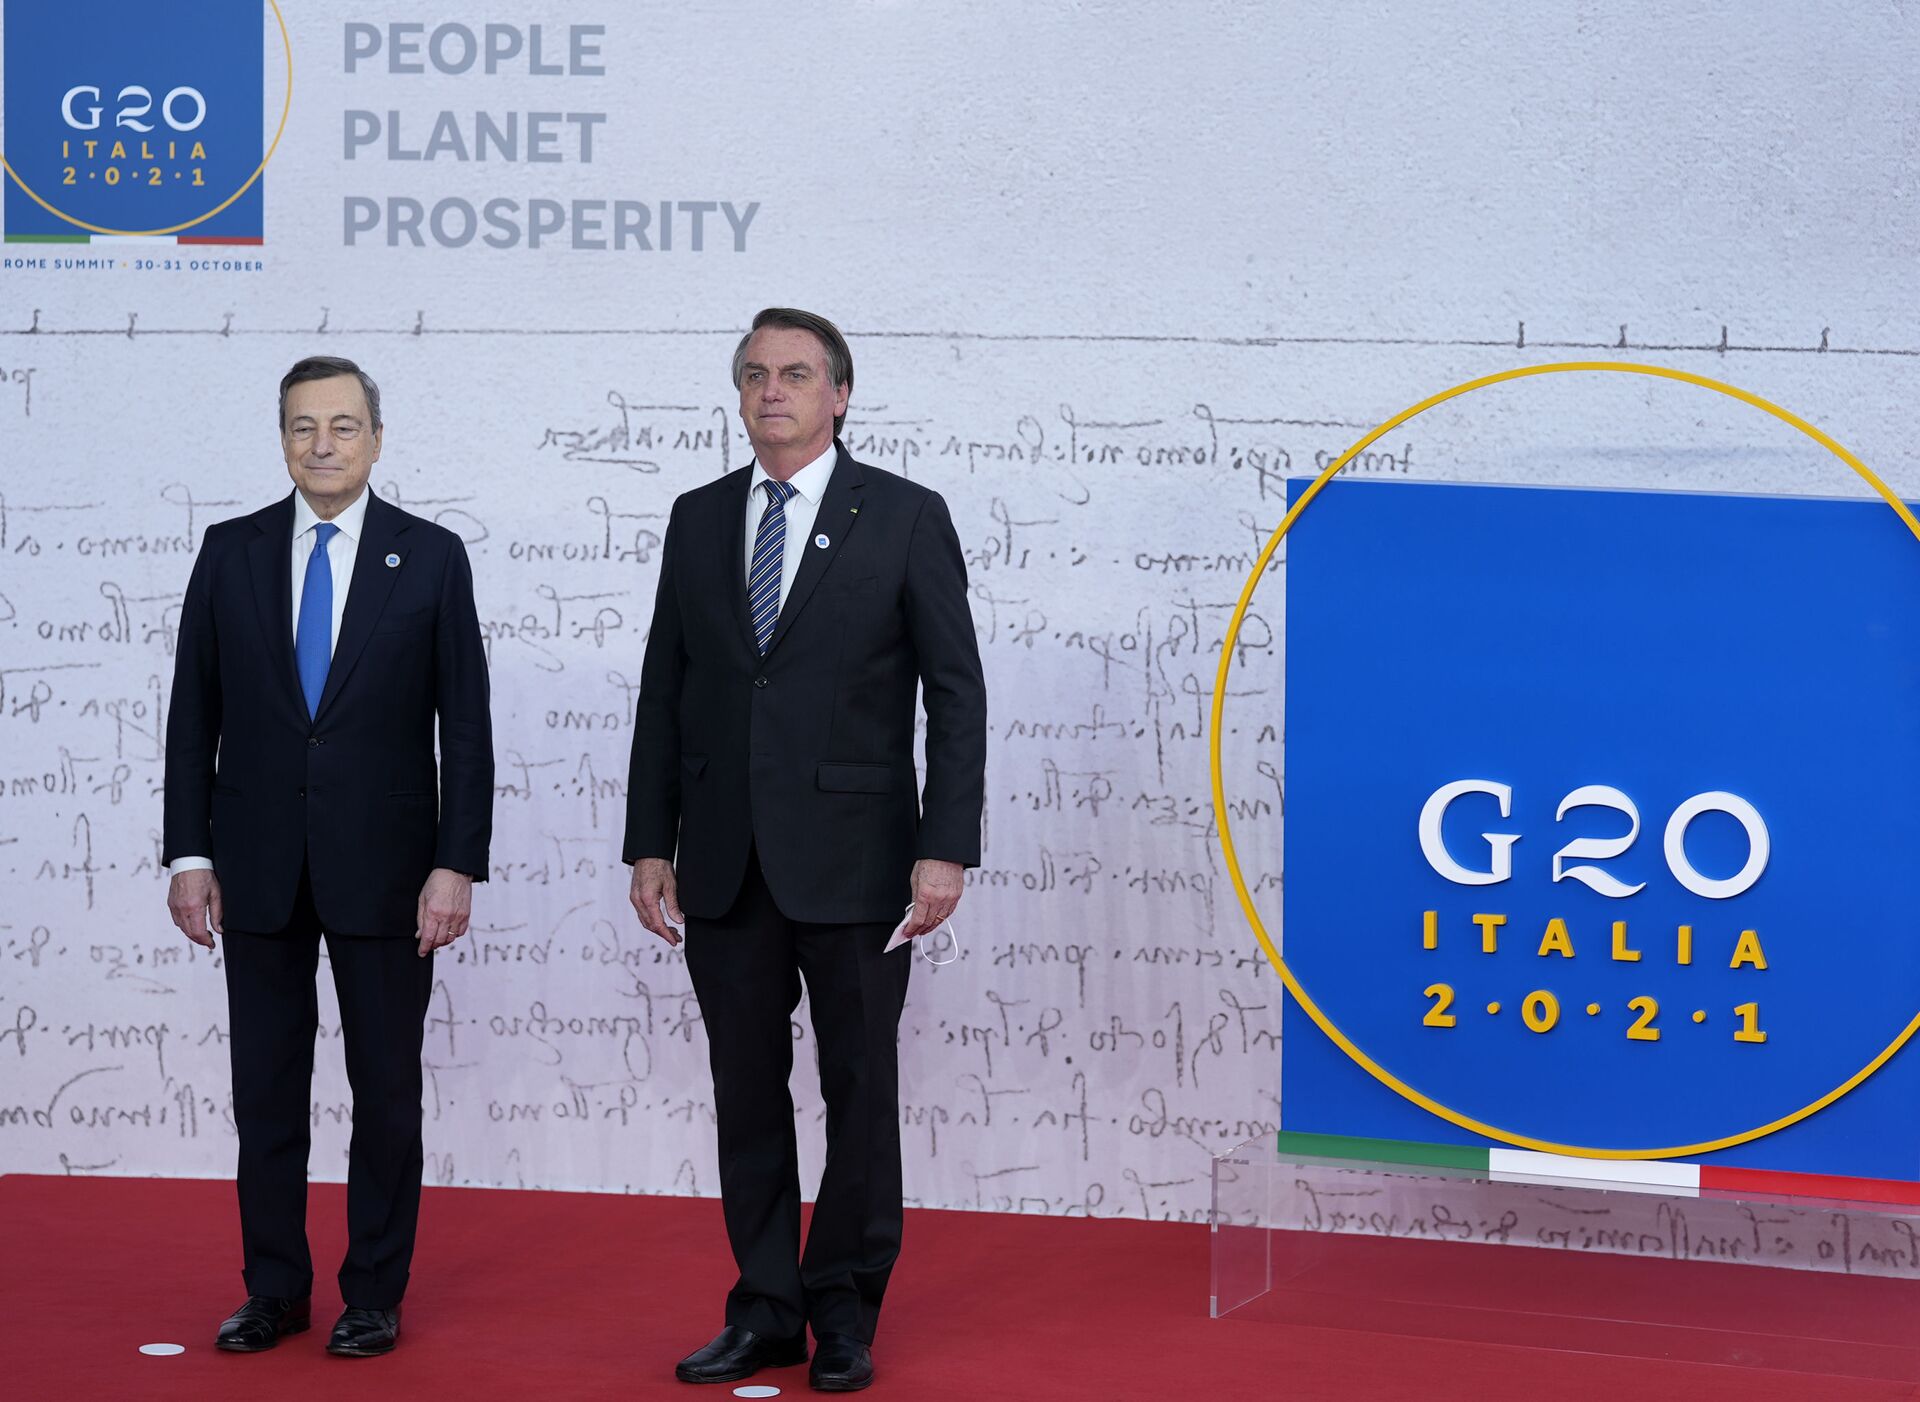 O presidente do Brasil, Jair Bolsonaro (à direita), posa com o primeiro-ministro da Itália, Mario Draghi, durante chegada ao centro de convenções La Nuvola para a cúpula do G20 em Roma, em 30 de outubro de 2021 - Sputnik Brasil, 1920, 09.11.2021